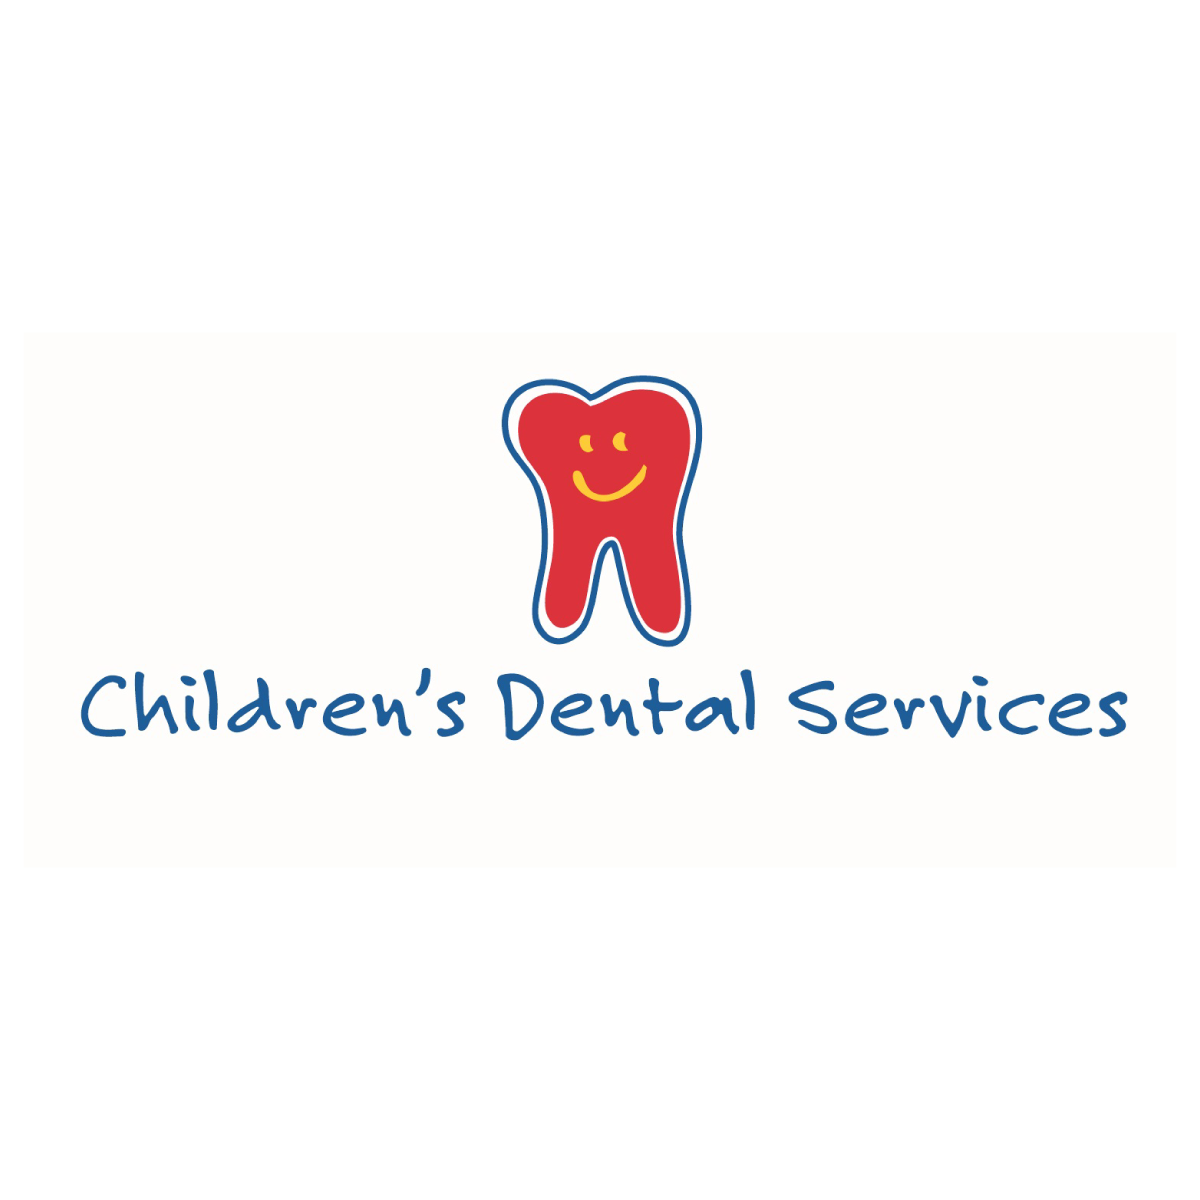 Servicios dentales para niños
childrensdentalservices.org 